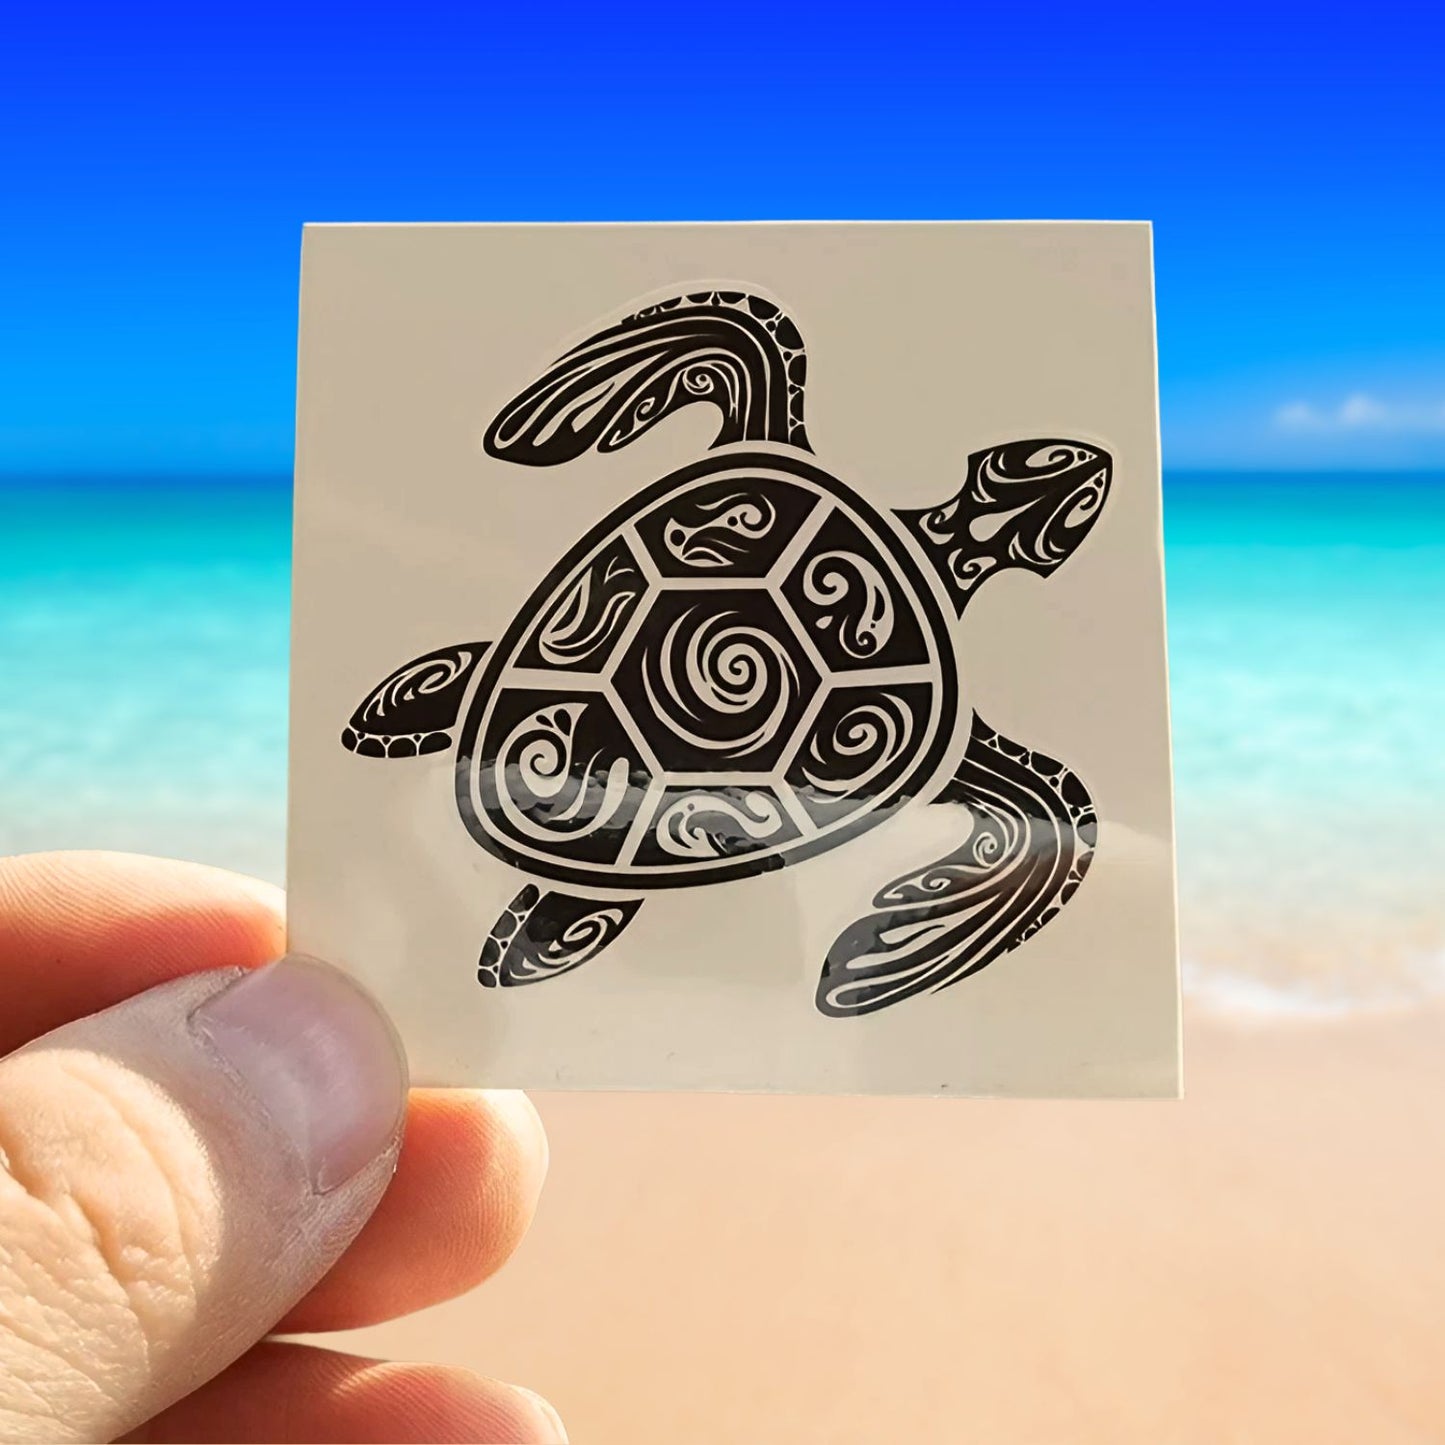 INKED turtle tattoo